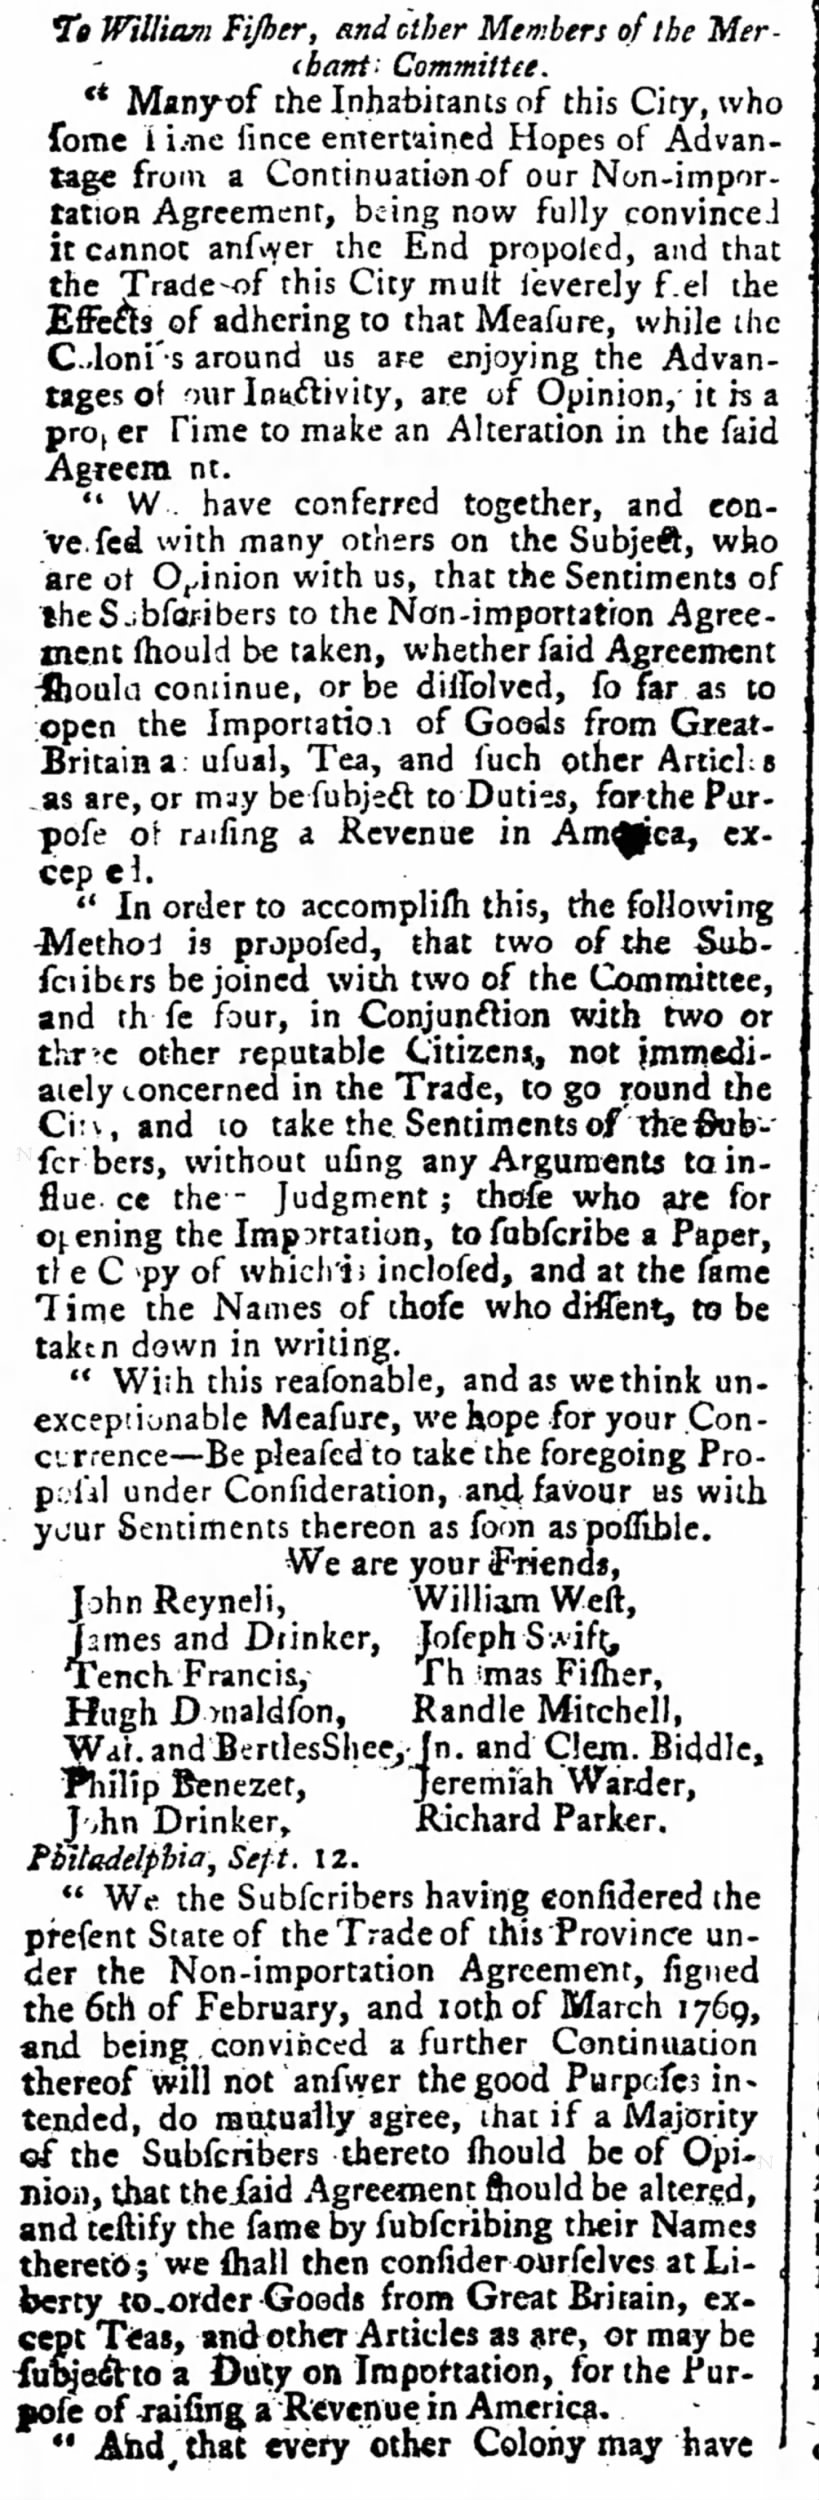 Philadelphia Merchant Committee_trade_Tench Francis, Drinker, Biddle et al_1770